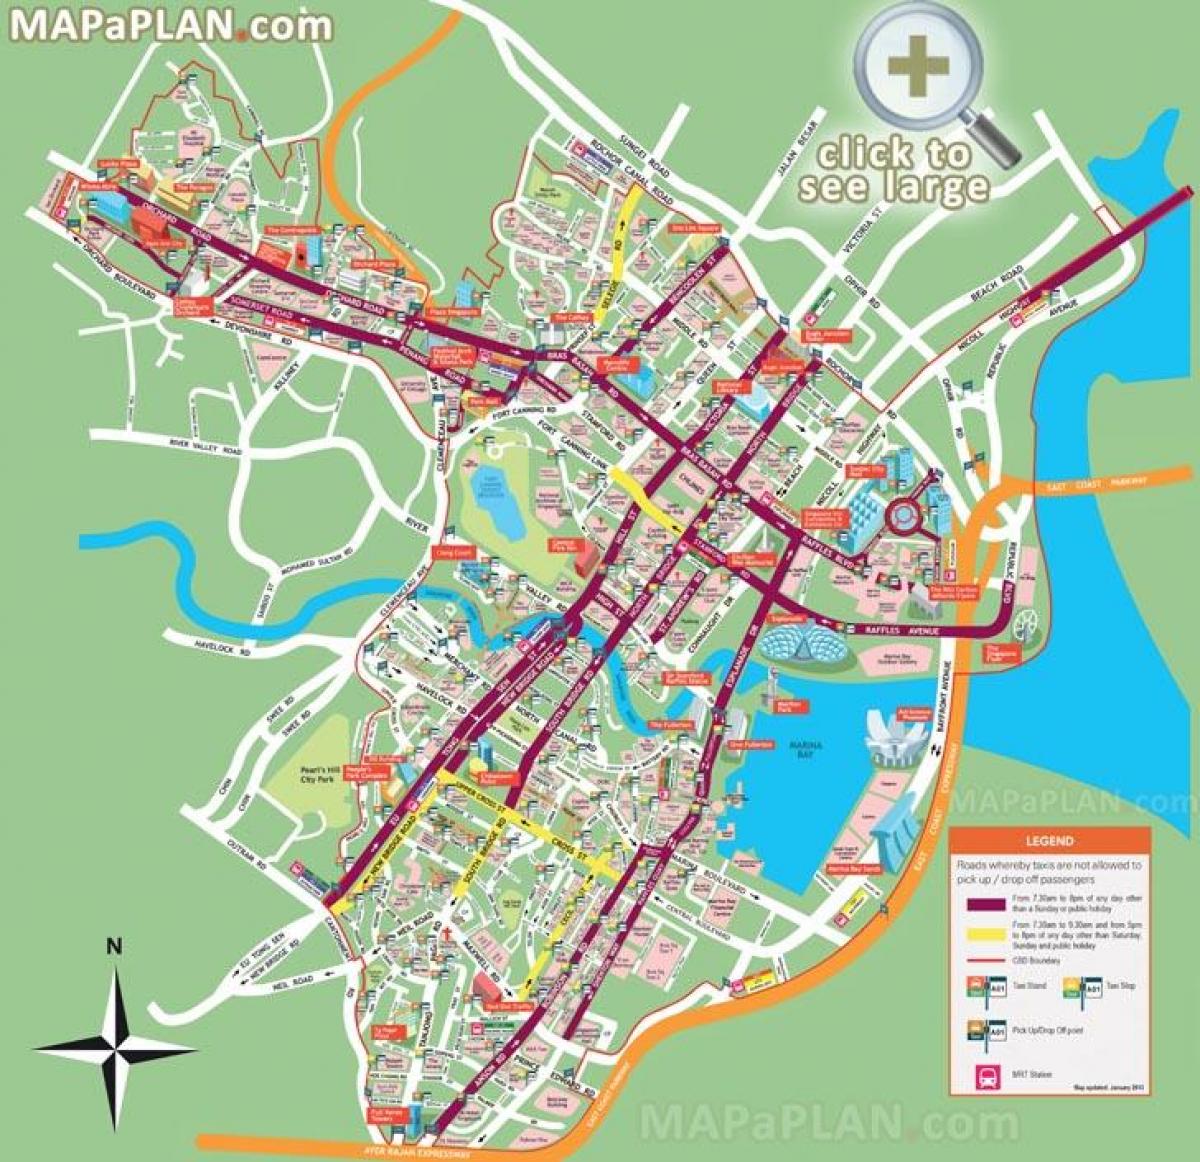 Singapoer toerisme-aantreklikhede kaart